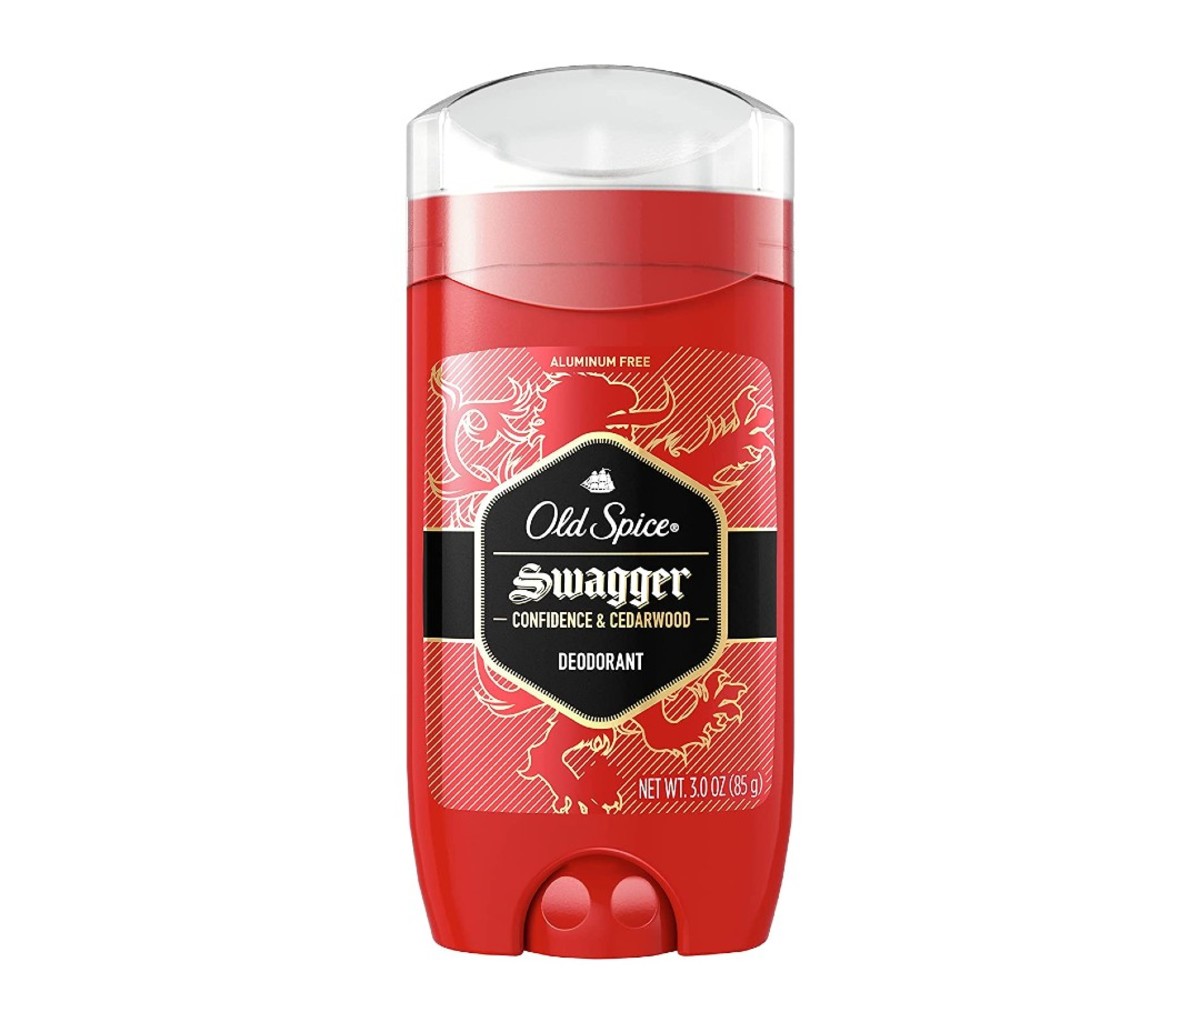 Old Spice’s Aluminum-Free Deodorant